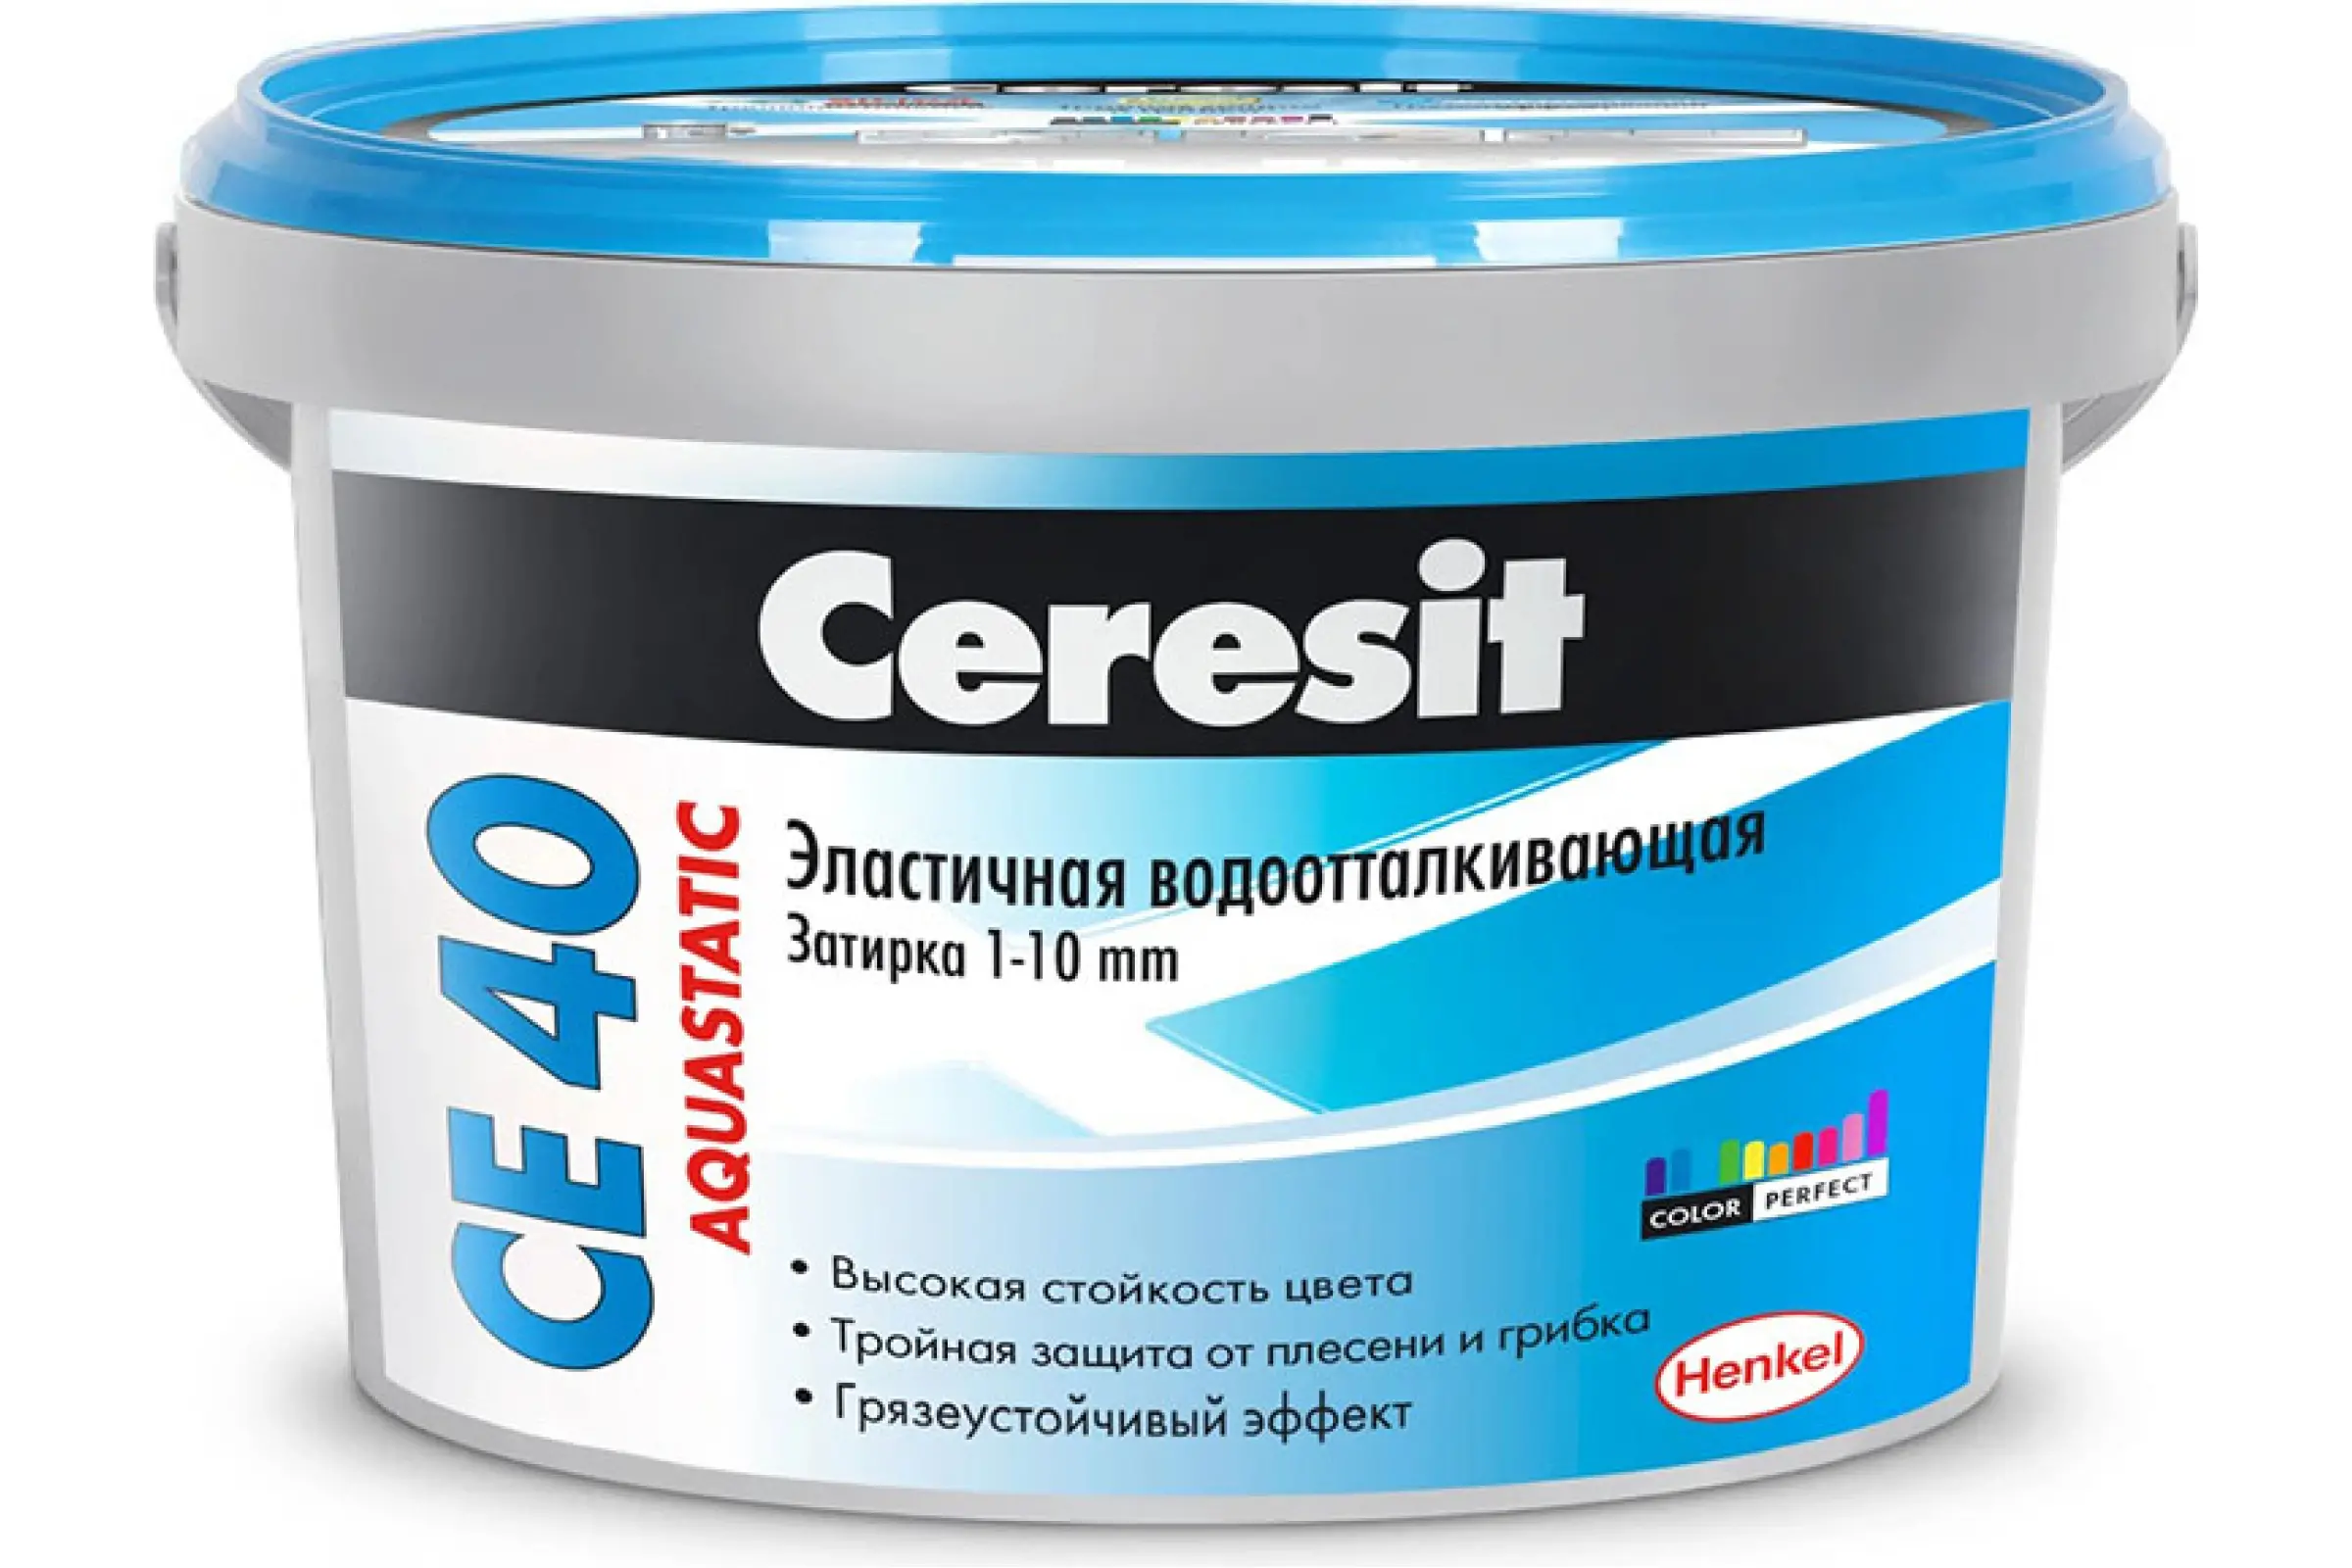 Затирка Ceresit CE 40 aquastatic №01 белая 1 кг